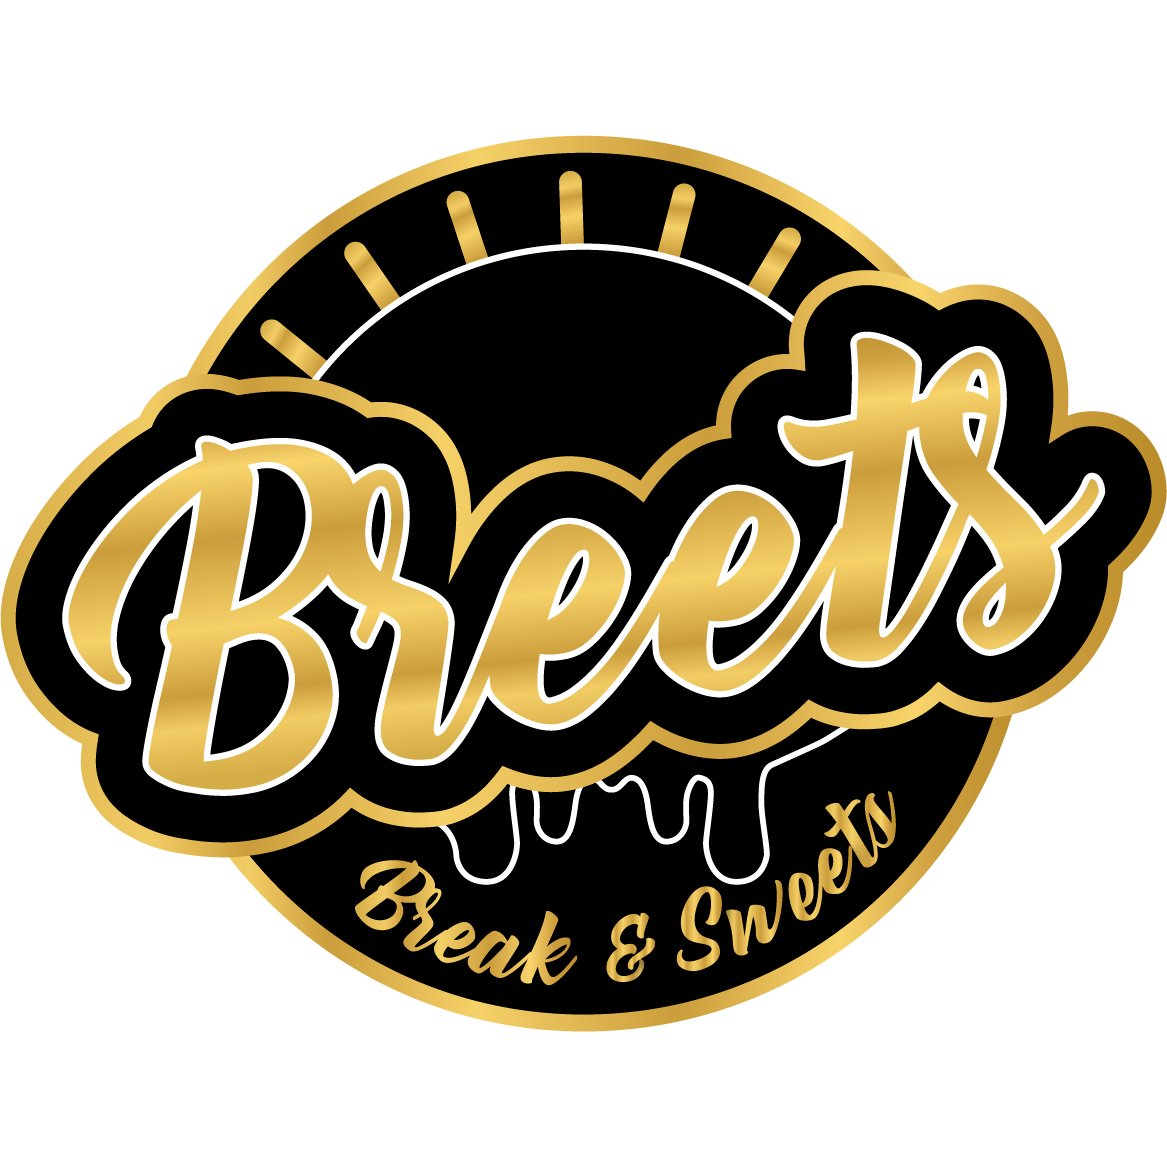 Breets - Break & Sweets in Berlin - Logo